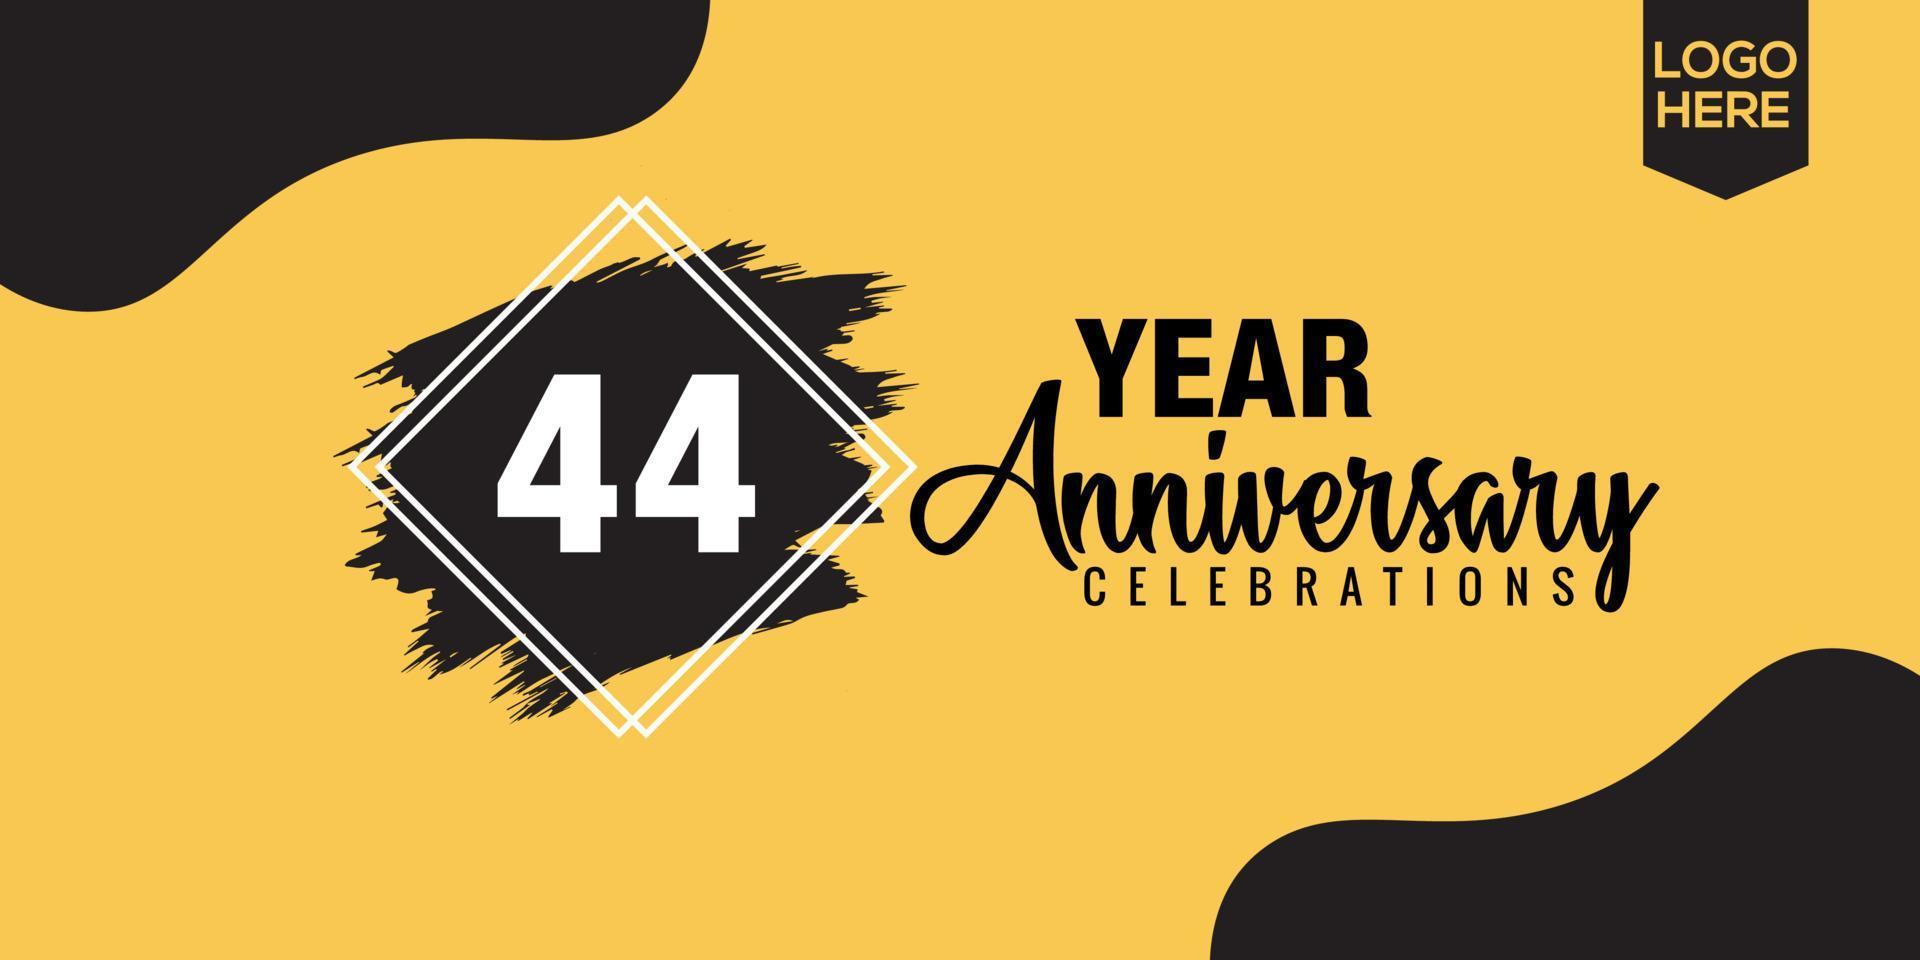 44th anni anniversario celebrazione logo design con nero spazzola e giallo colore con nero astratto vettore illustrazione